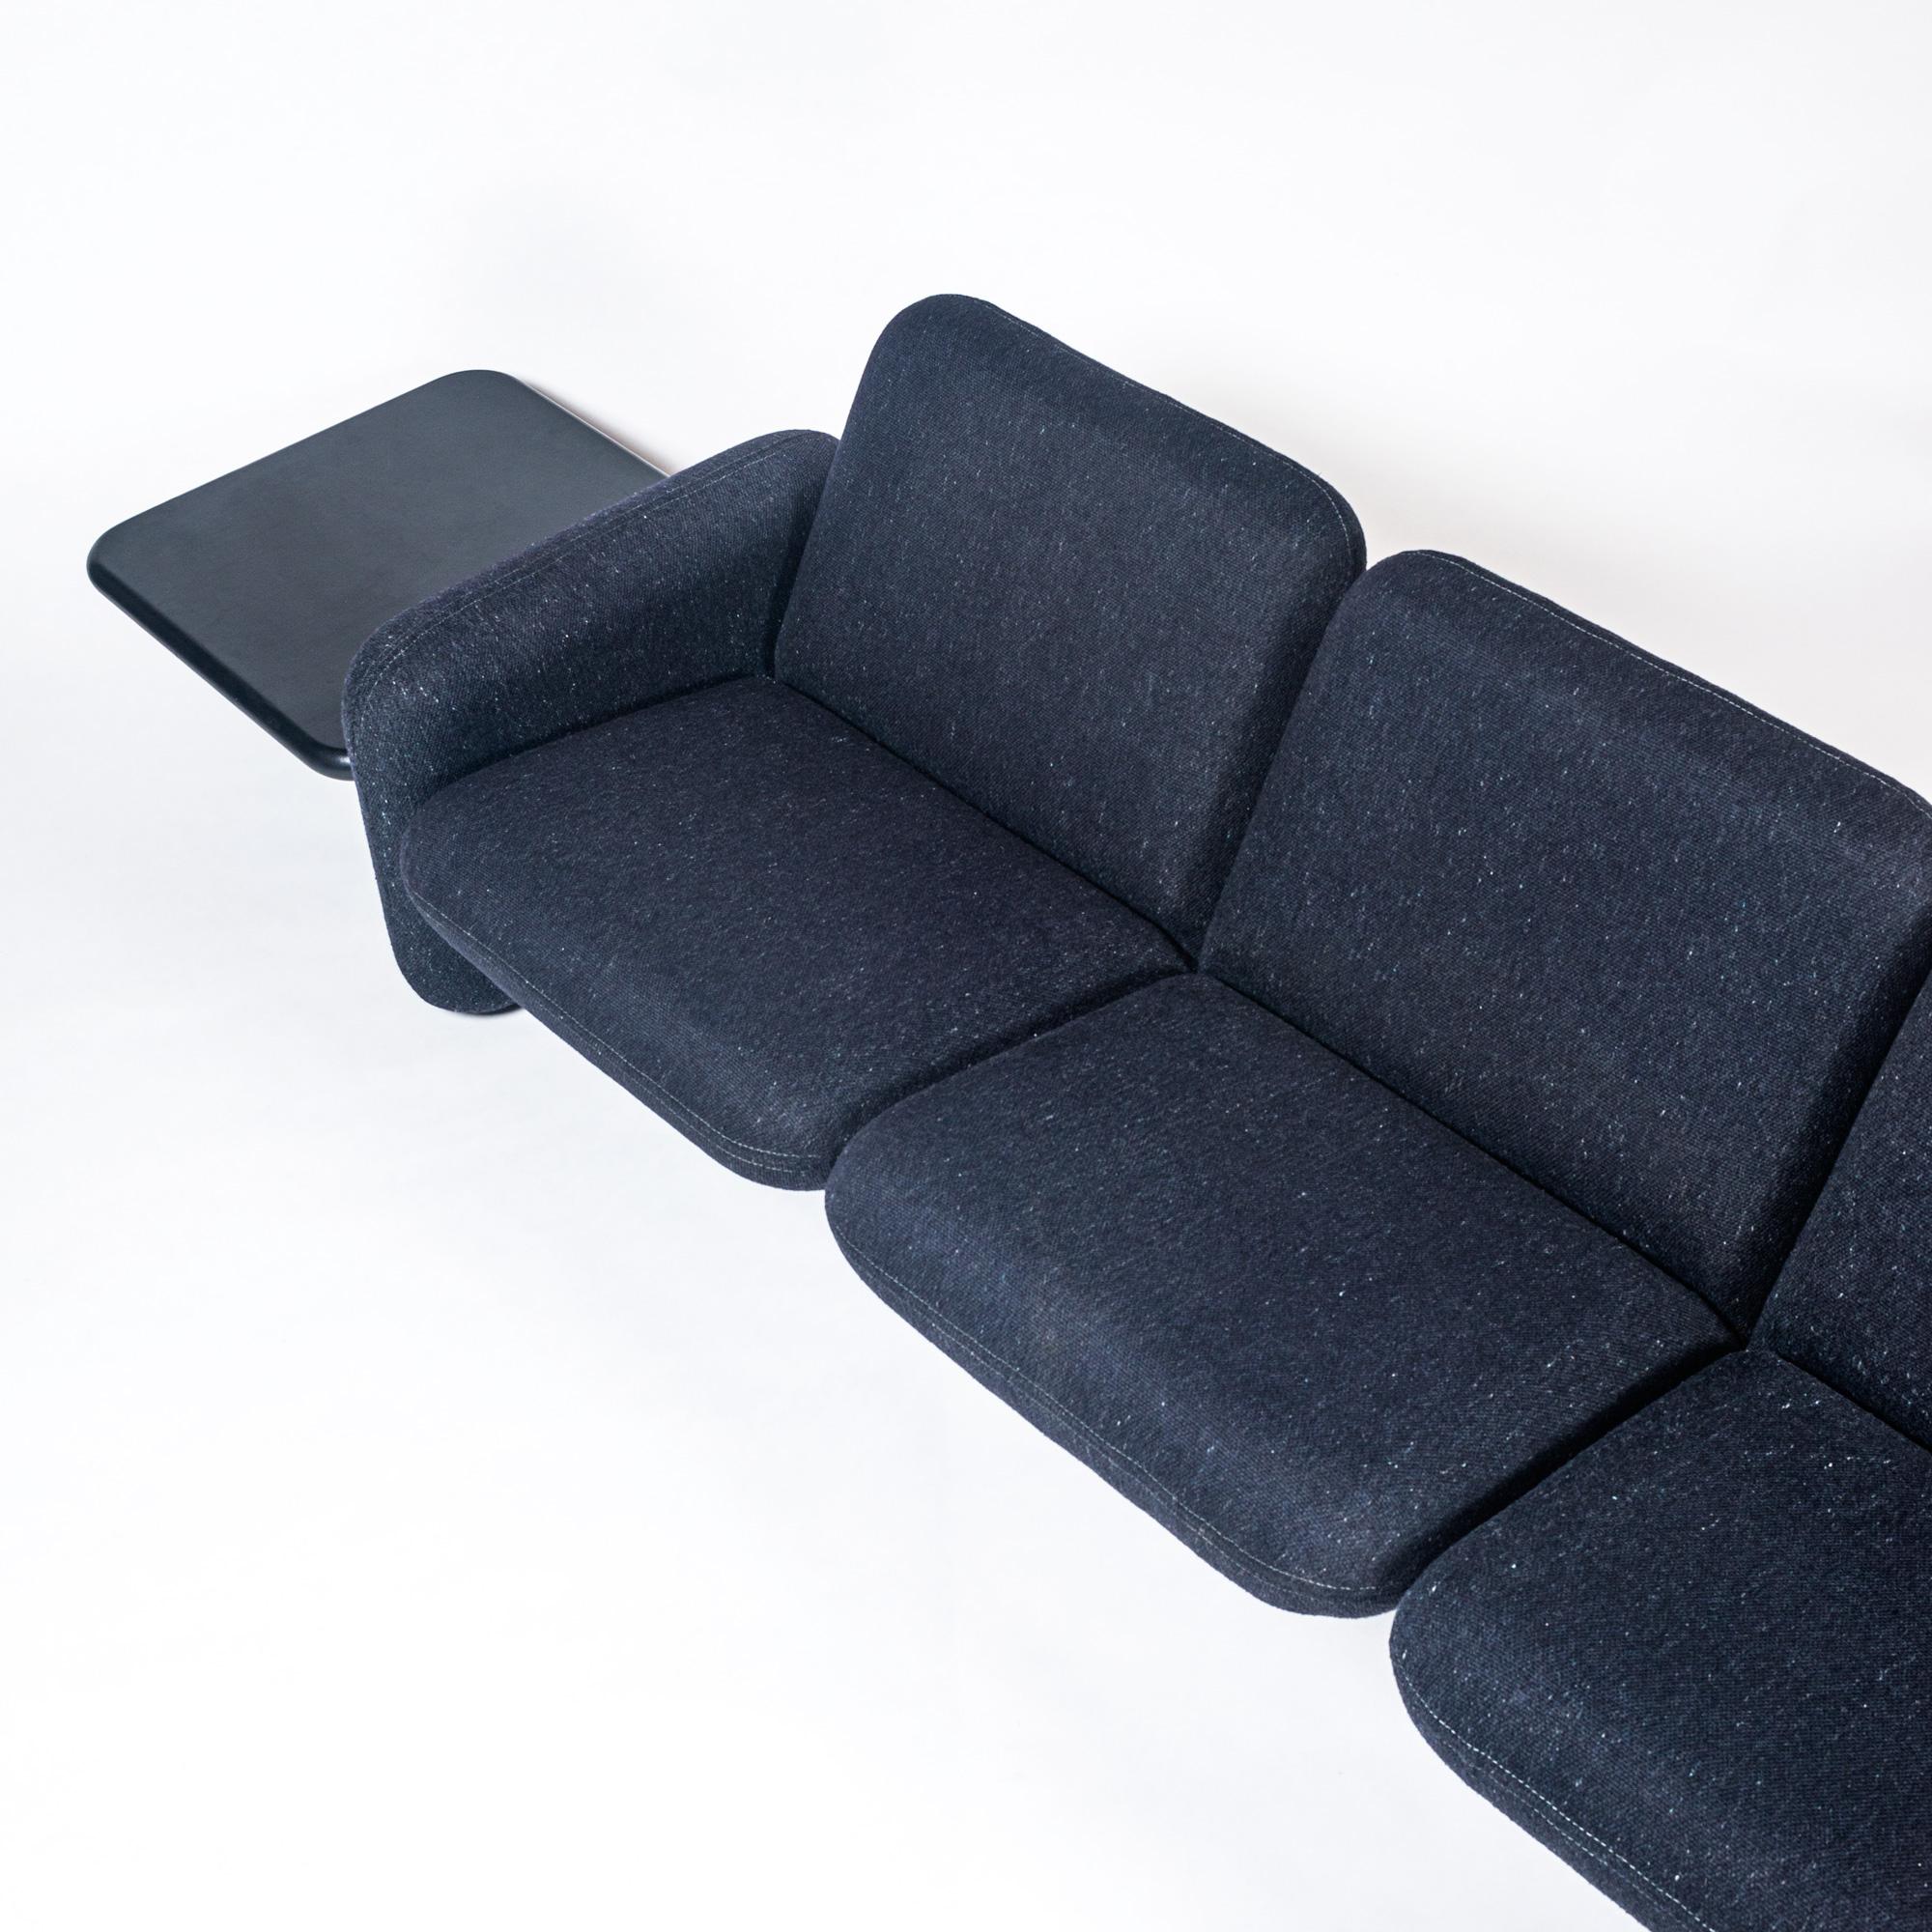 3-sitziges Chiclet-Sofa mit Beistelltischen aus schwarzem Leder, entworfen von Ray Wilkes für Herman Miller, ca. 1970er Jahre. Das Sofa ist mit dem ursprünglichen blau-schwarzen Wollstoff bezogen. Kann gegen Aufpreis neue Beistelltische aus Hartholz